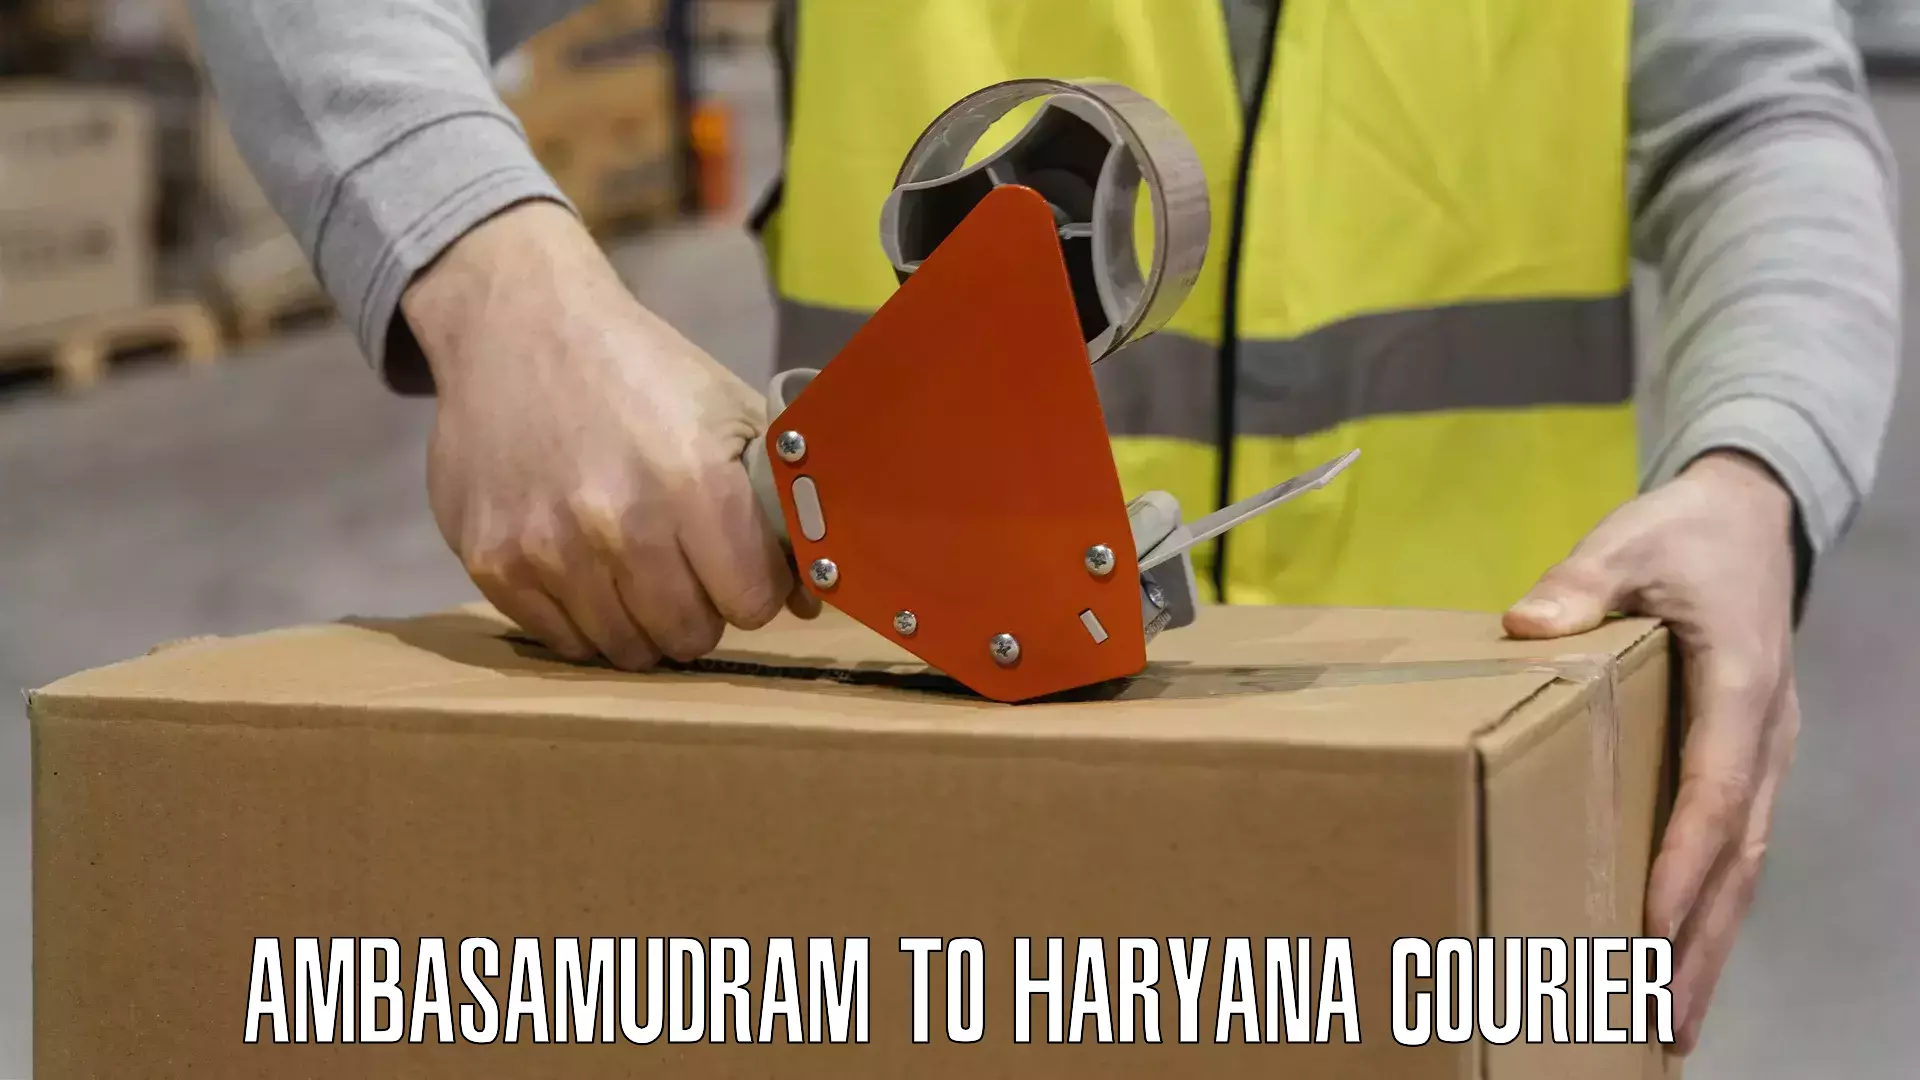 Automated shipping Ambasamudram to Chaudhary Charan Singh Haryana Agricultural University Hisar